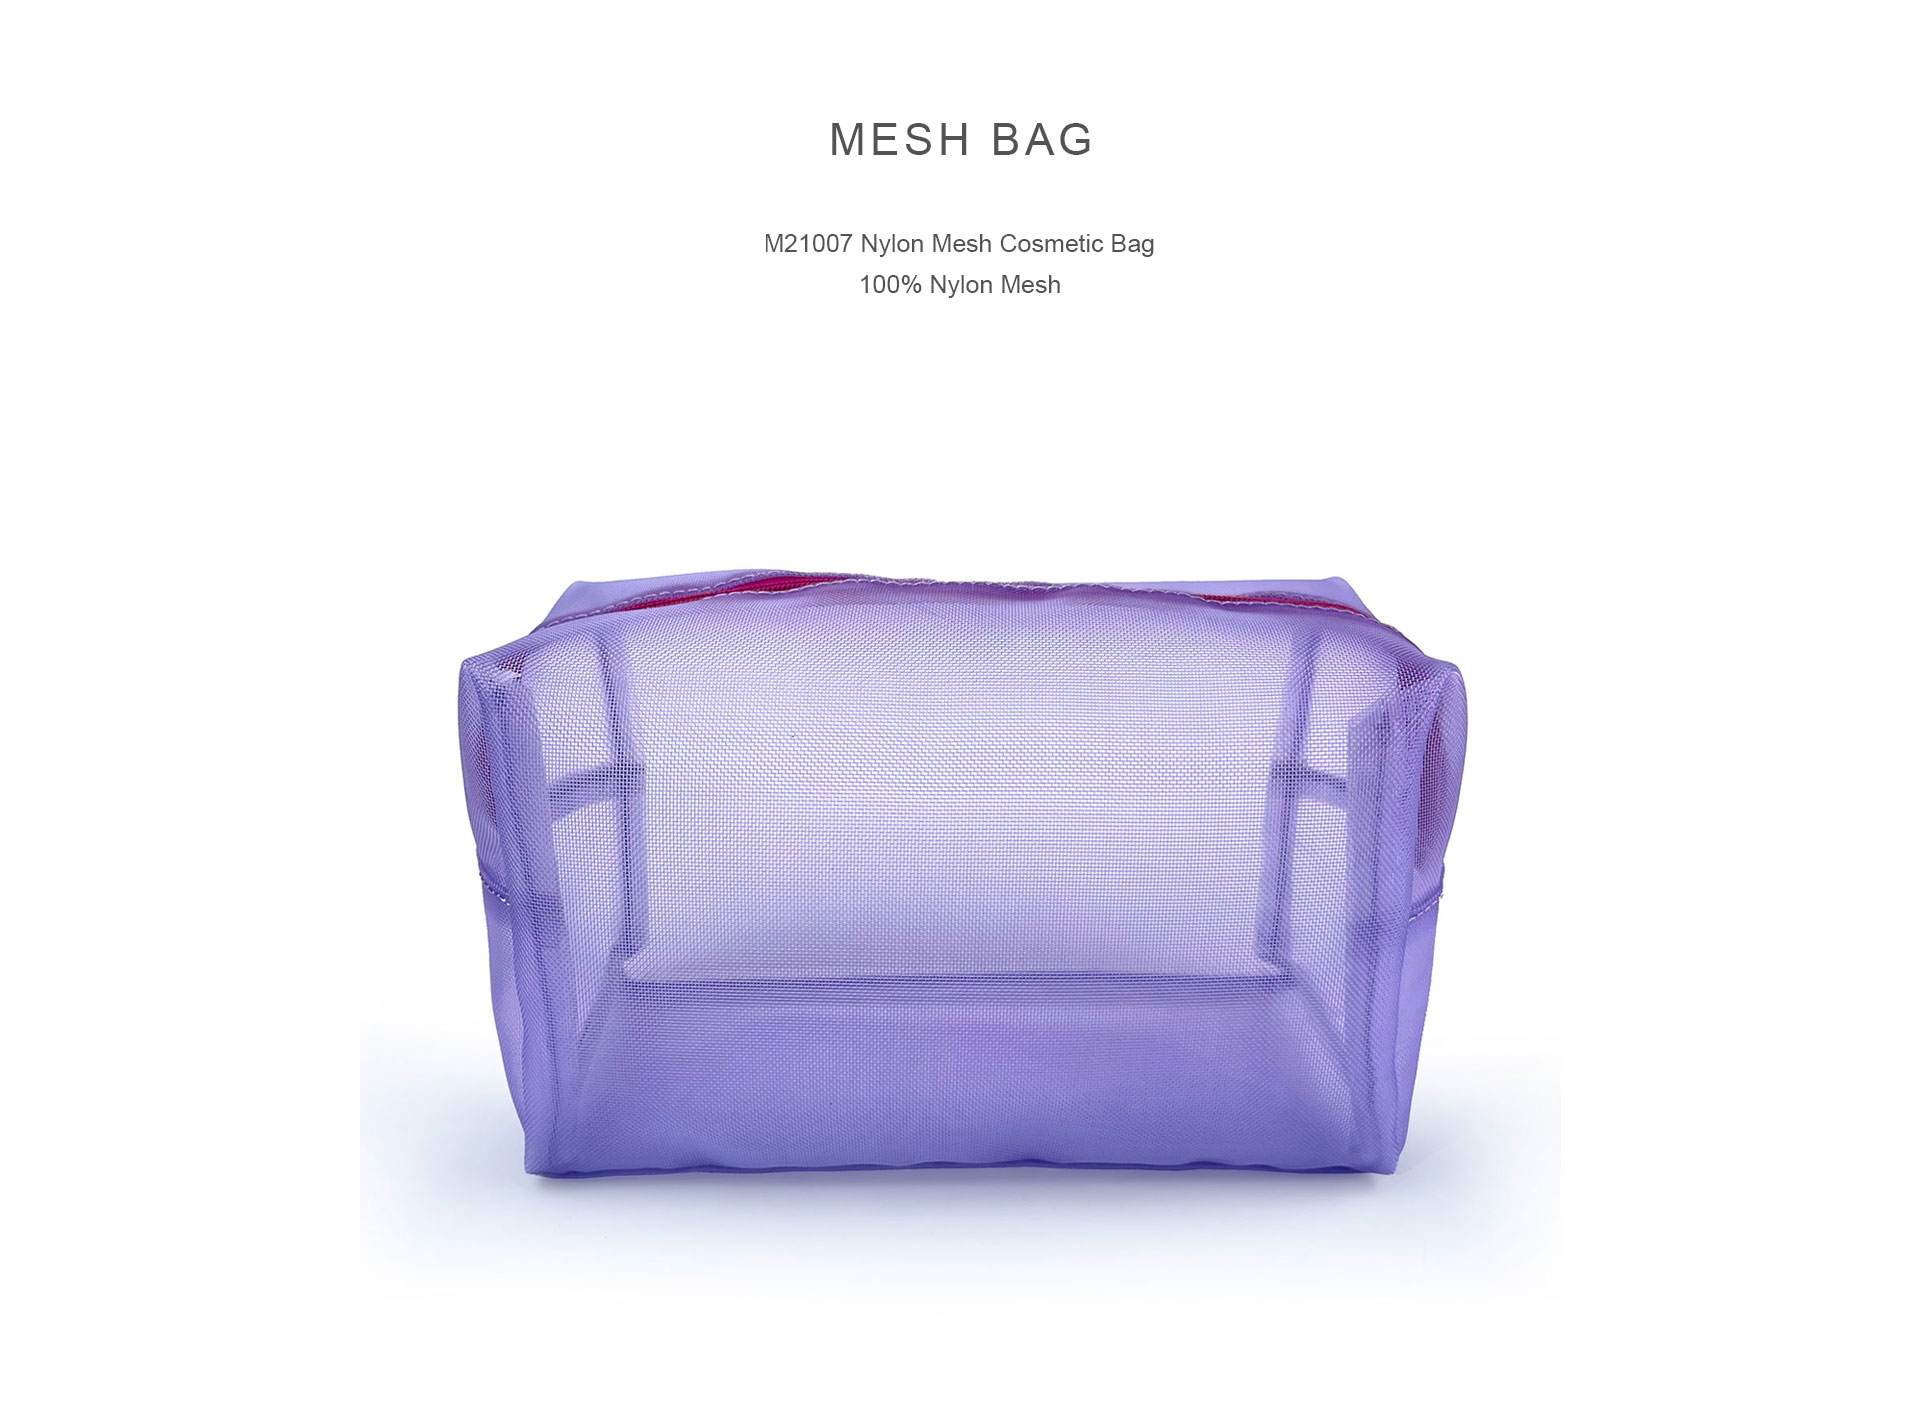 M21007 Nylon Mesh Cosmetic Bag